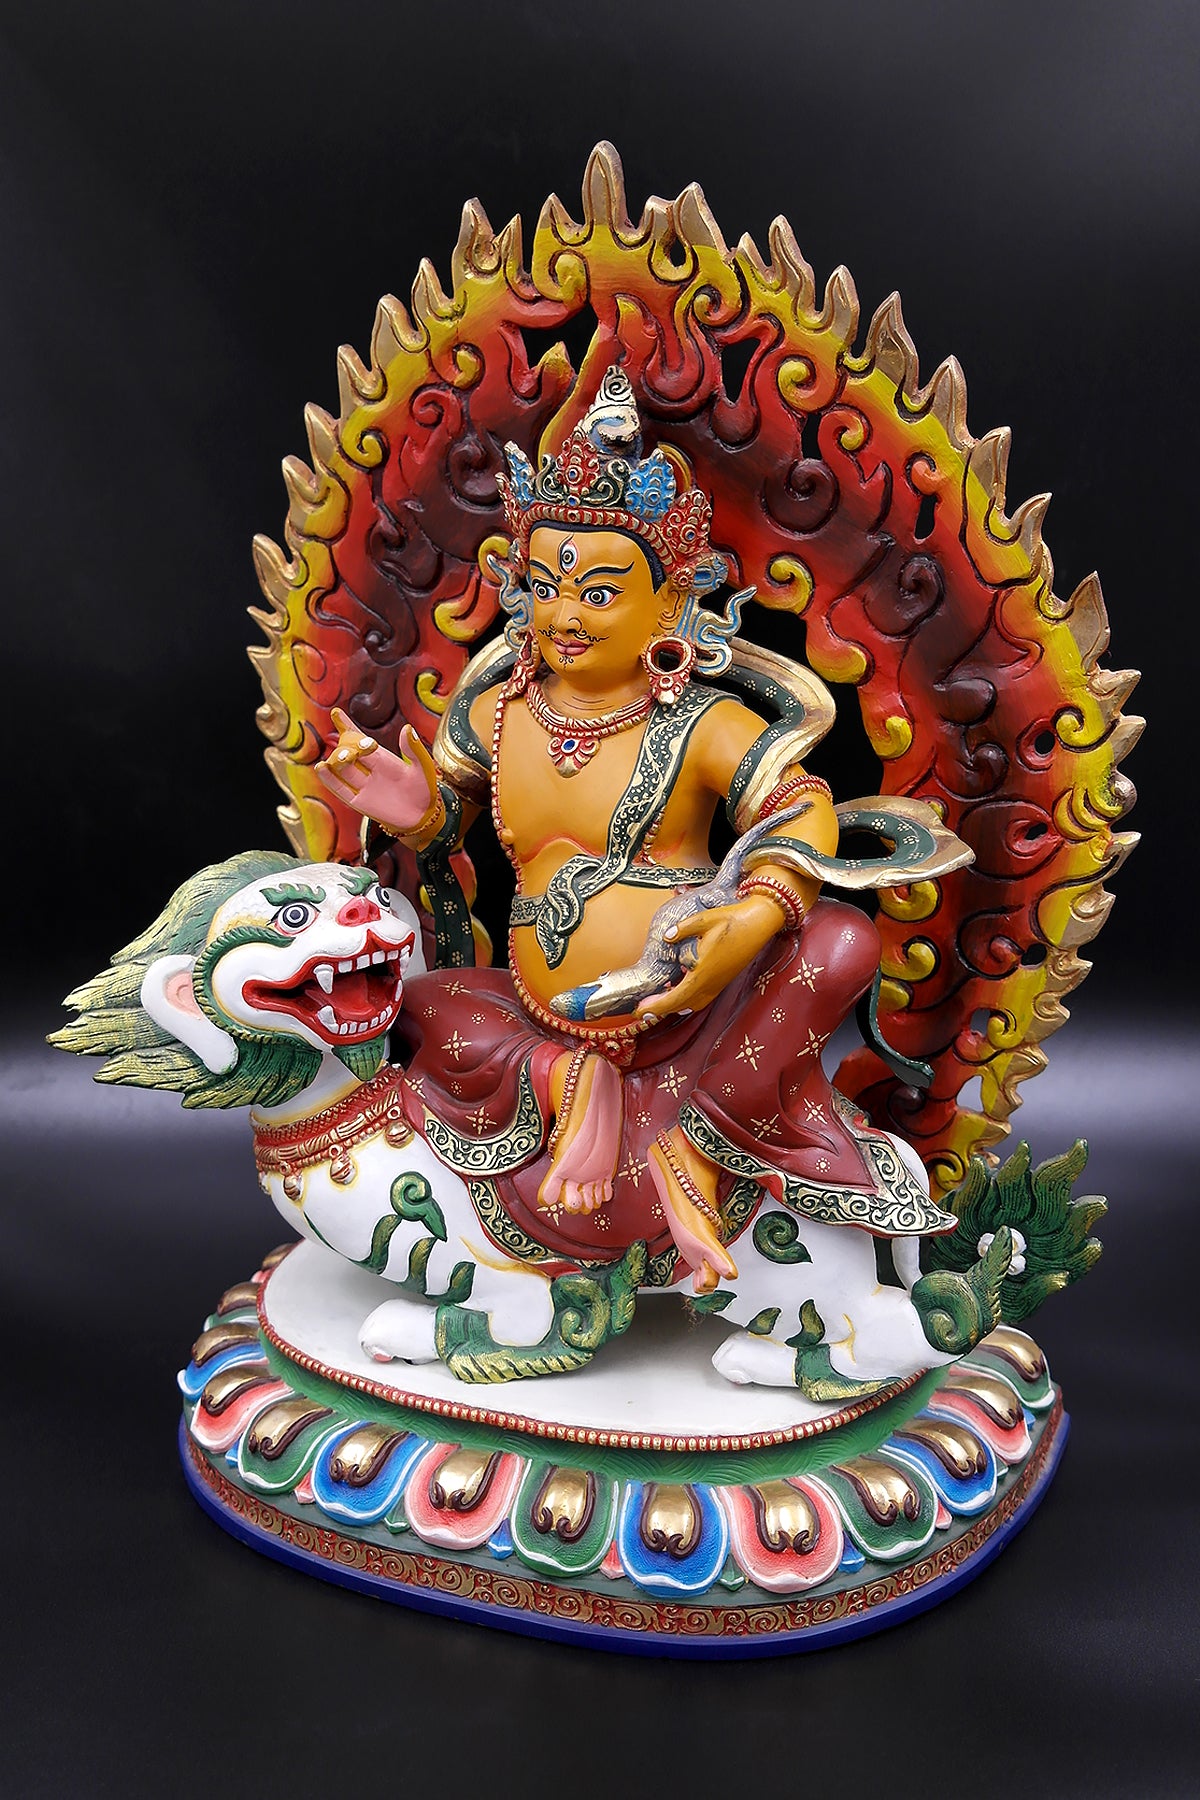 Hand painted Zambala Statue, Handmade Kubera Statue from Nepal